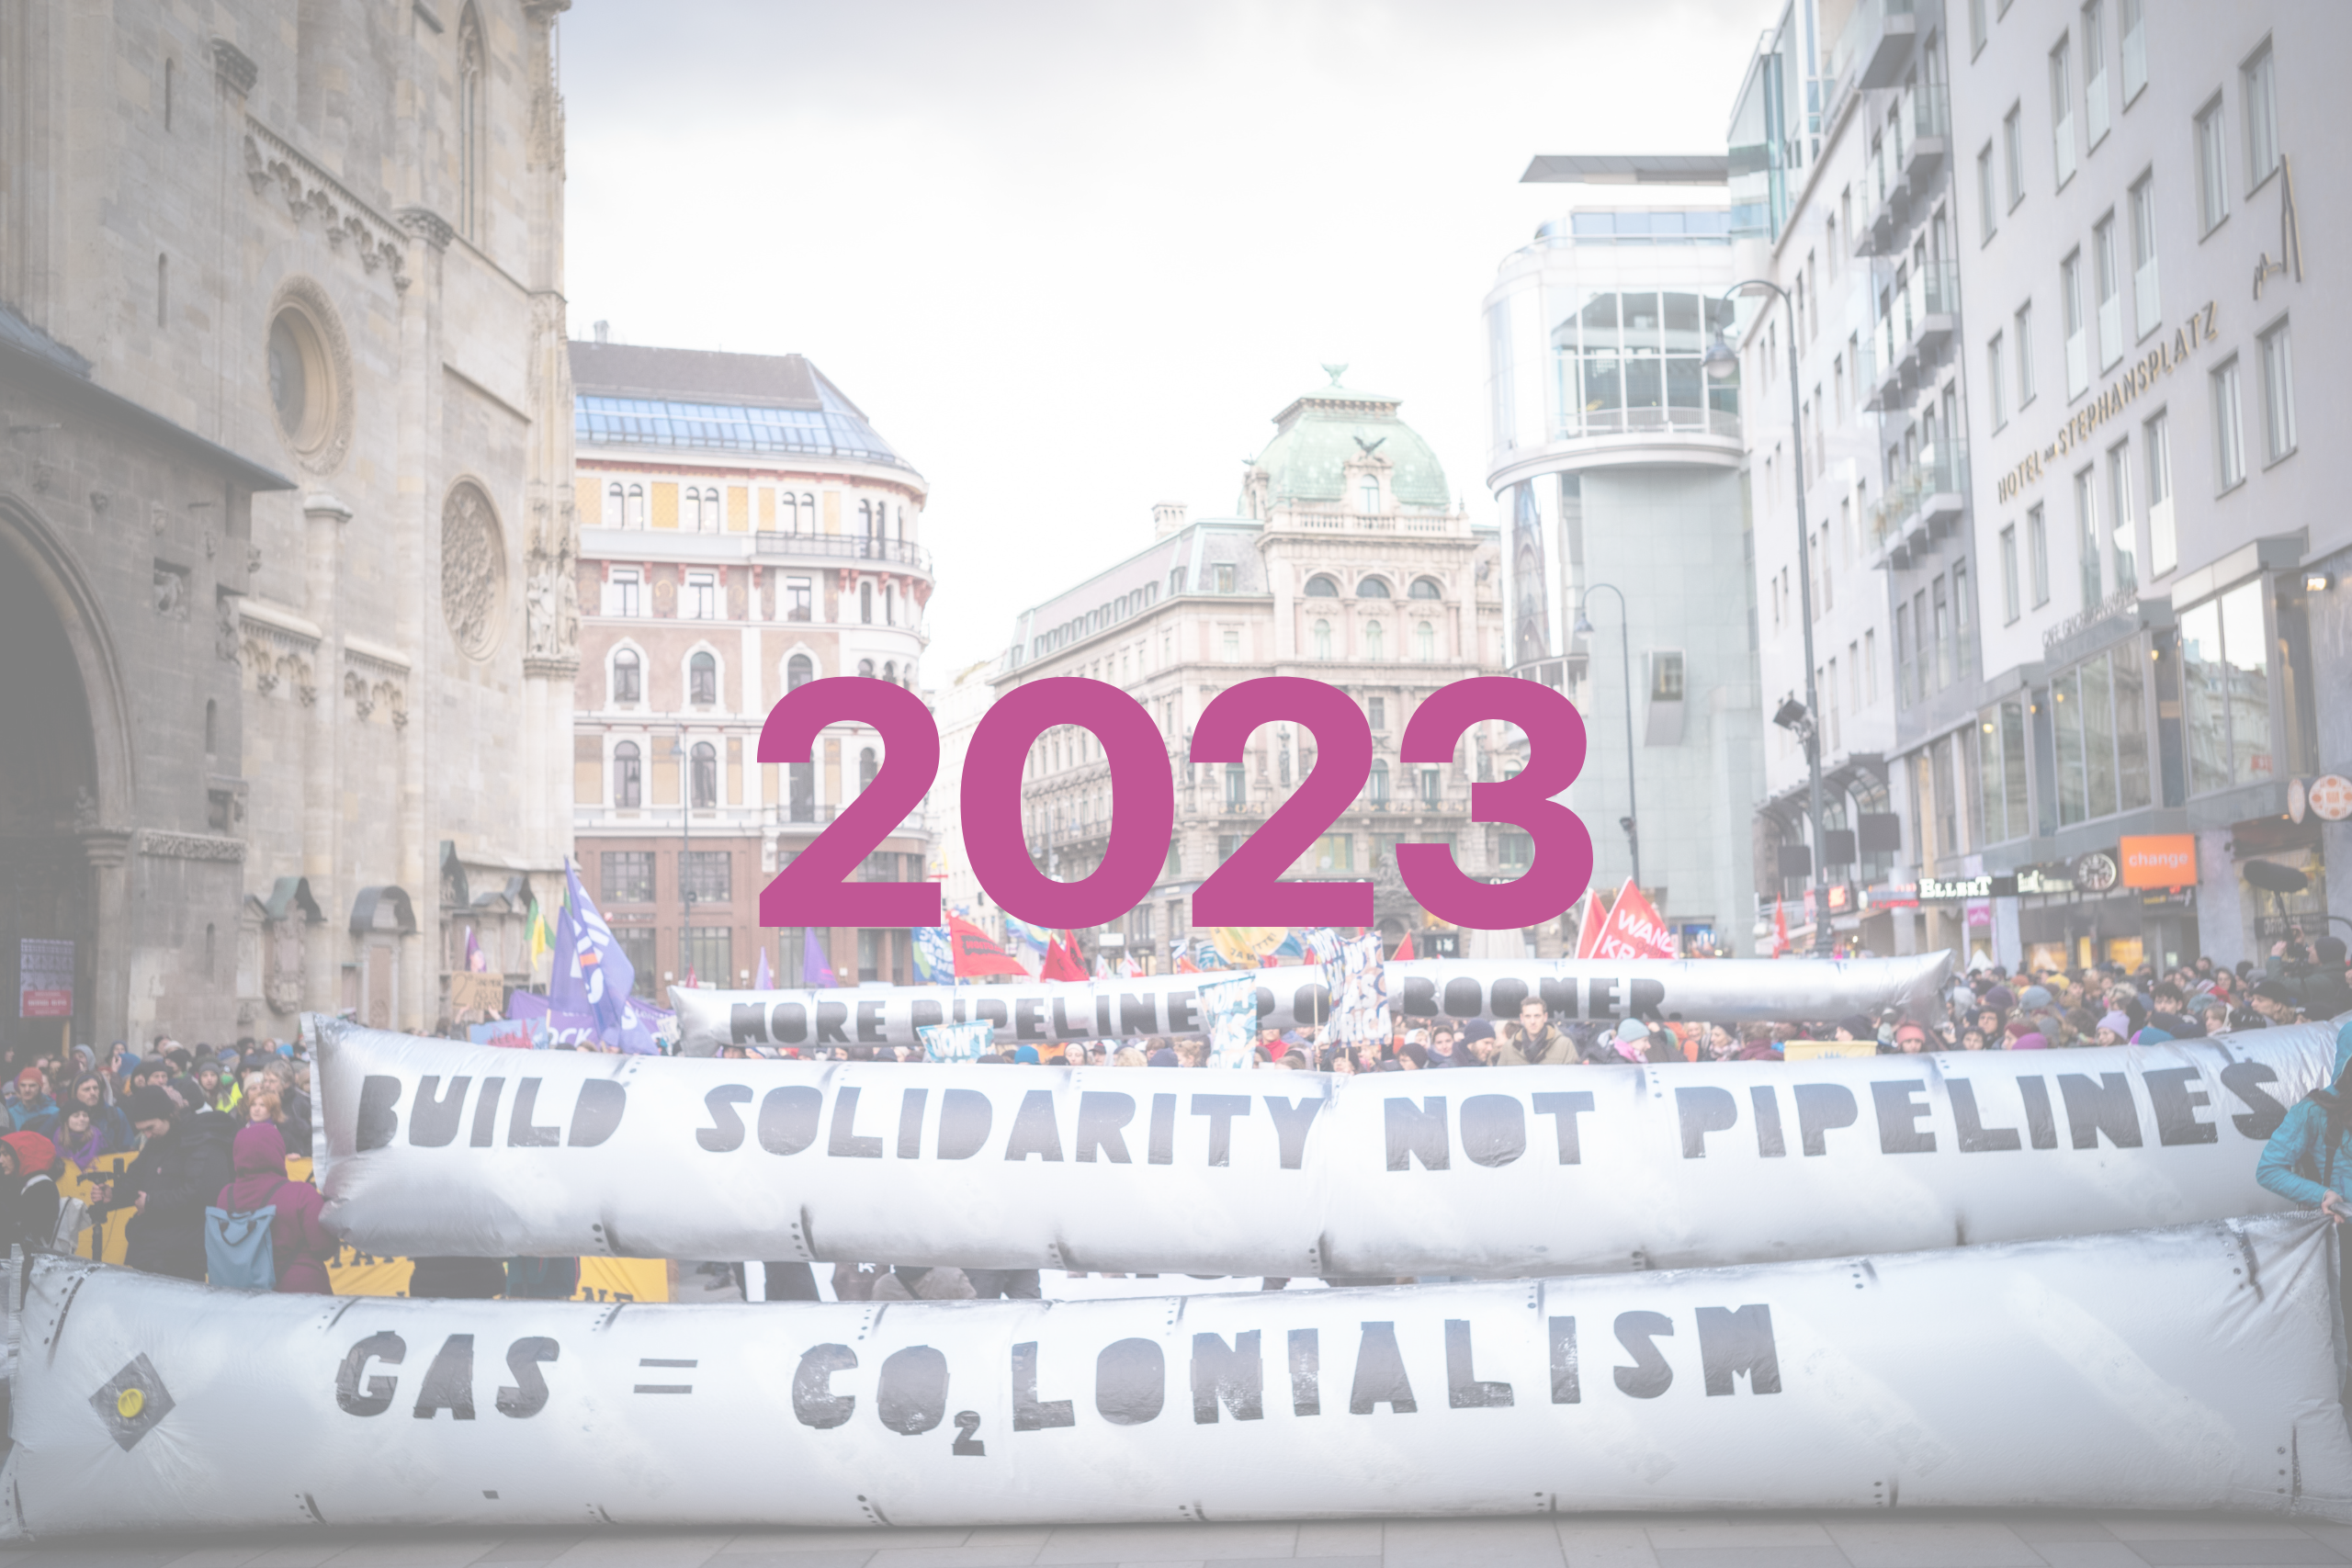 Man sieht die Zahl 2023, im Hintergrund ein Foto einer großen Demonstration. Die vordersten Reihen der Demonstrierenden halten zwei lange Banner übereinander, die aufblasbar sind und an riesige Rohre erinnern. Auf dem oberen Banner steht "build solidarity not pipelines", auf dem unteren Banner steht "gas = colonialism". Nach dem dem "CO" von "colonialism" steht noch die Zahl 2 - für CO2.